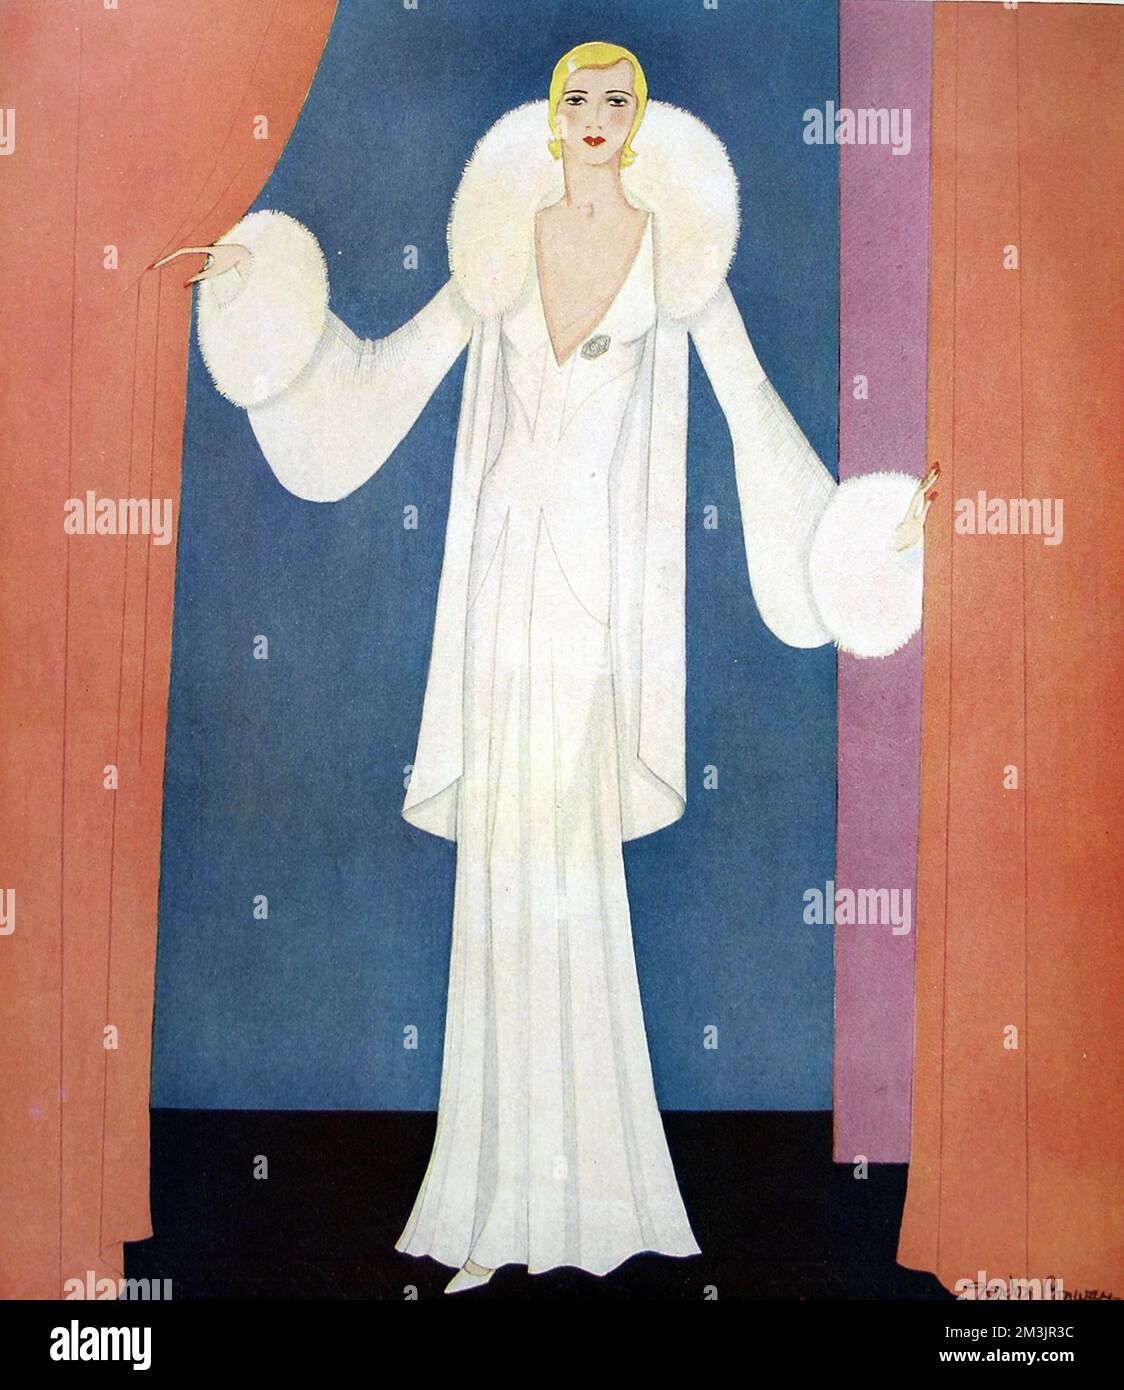 Placa de moda por Gordon Conway, mostrando un elegante vestido de noche en crepe blanco pesado con una falda de línea de princesa emparejada con una envoltura de chifón-terciopelo blanco adornada con piel de zorro blanco. 1930 Foto de stock